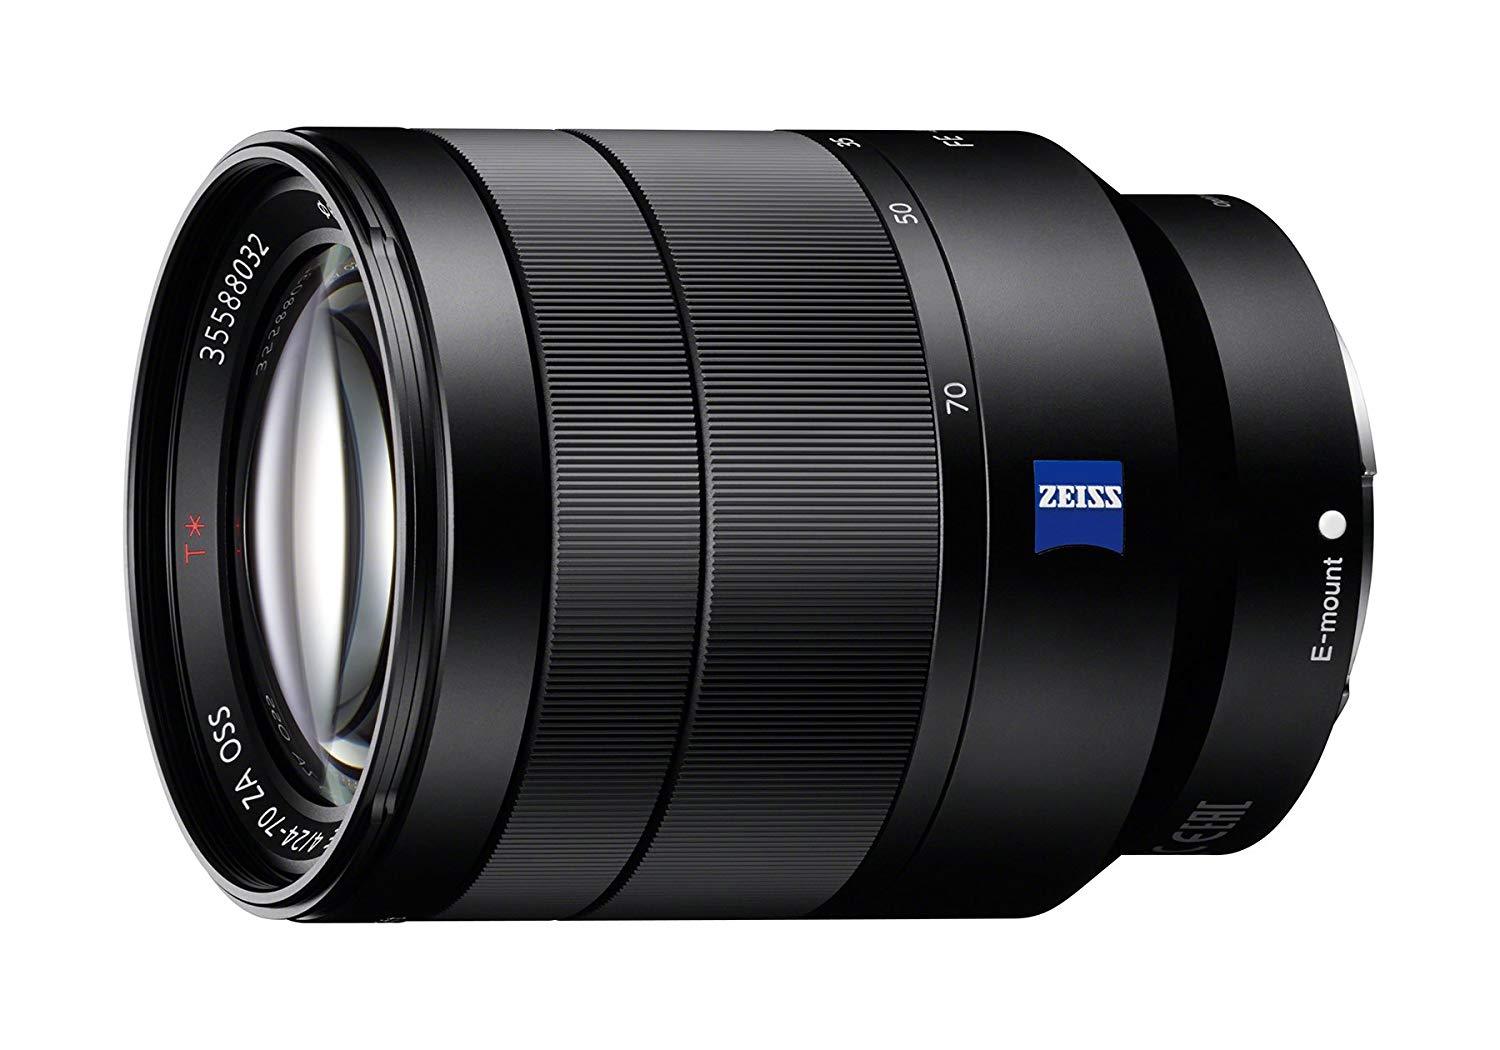 Sony Vario-Tessar T * FE 24-70mm f / 4 ZA OSS Lens